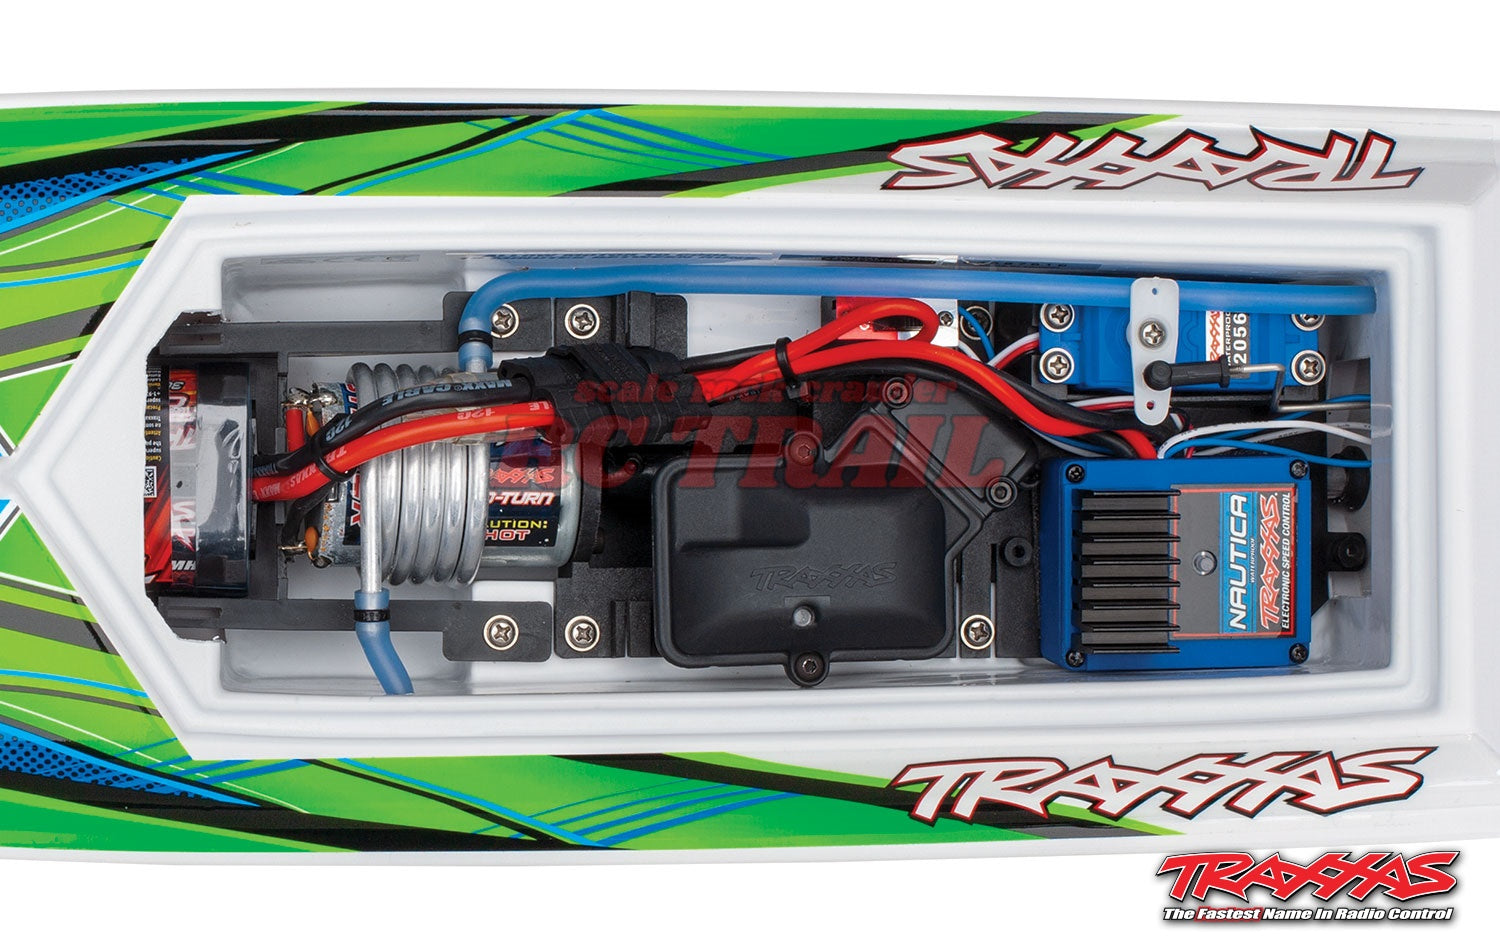 トラクサス ブラスト 24 "高性能RTRレースボート（グリーン）、TQ 2.4GHzプロポ、バッテリー、充電器付きフルセット　Traxxas blast 24　38104-1 - RCTRAIL